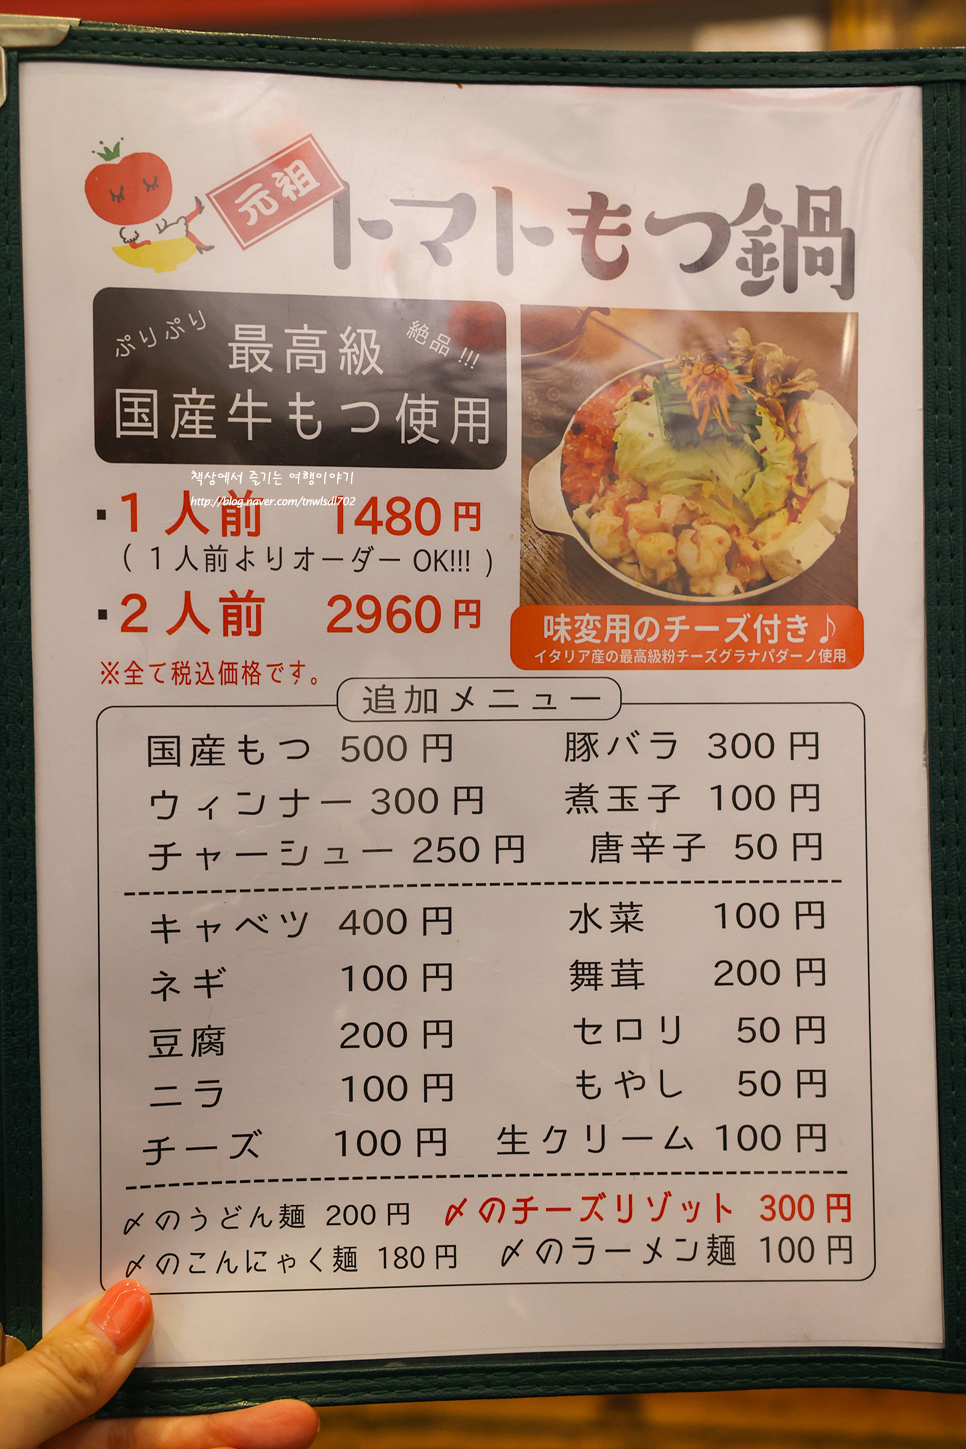 후쿠오카 모츠나베와 후쿠오카 라멘 토마토라멘 맛집 산미 24시간